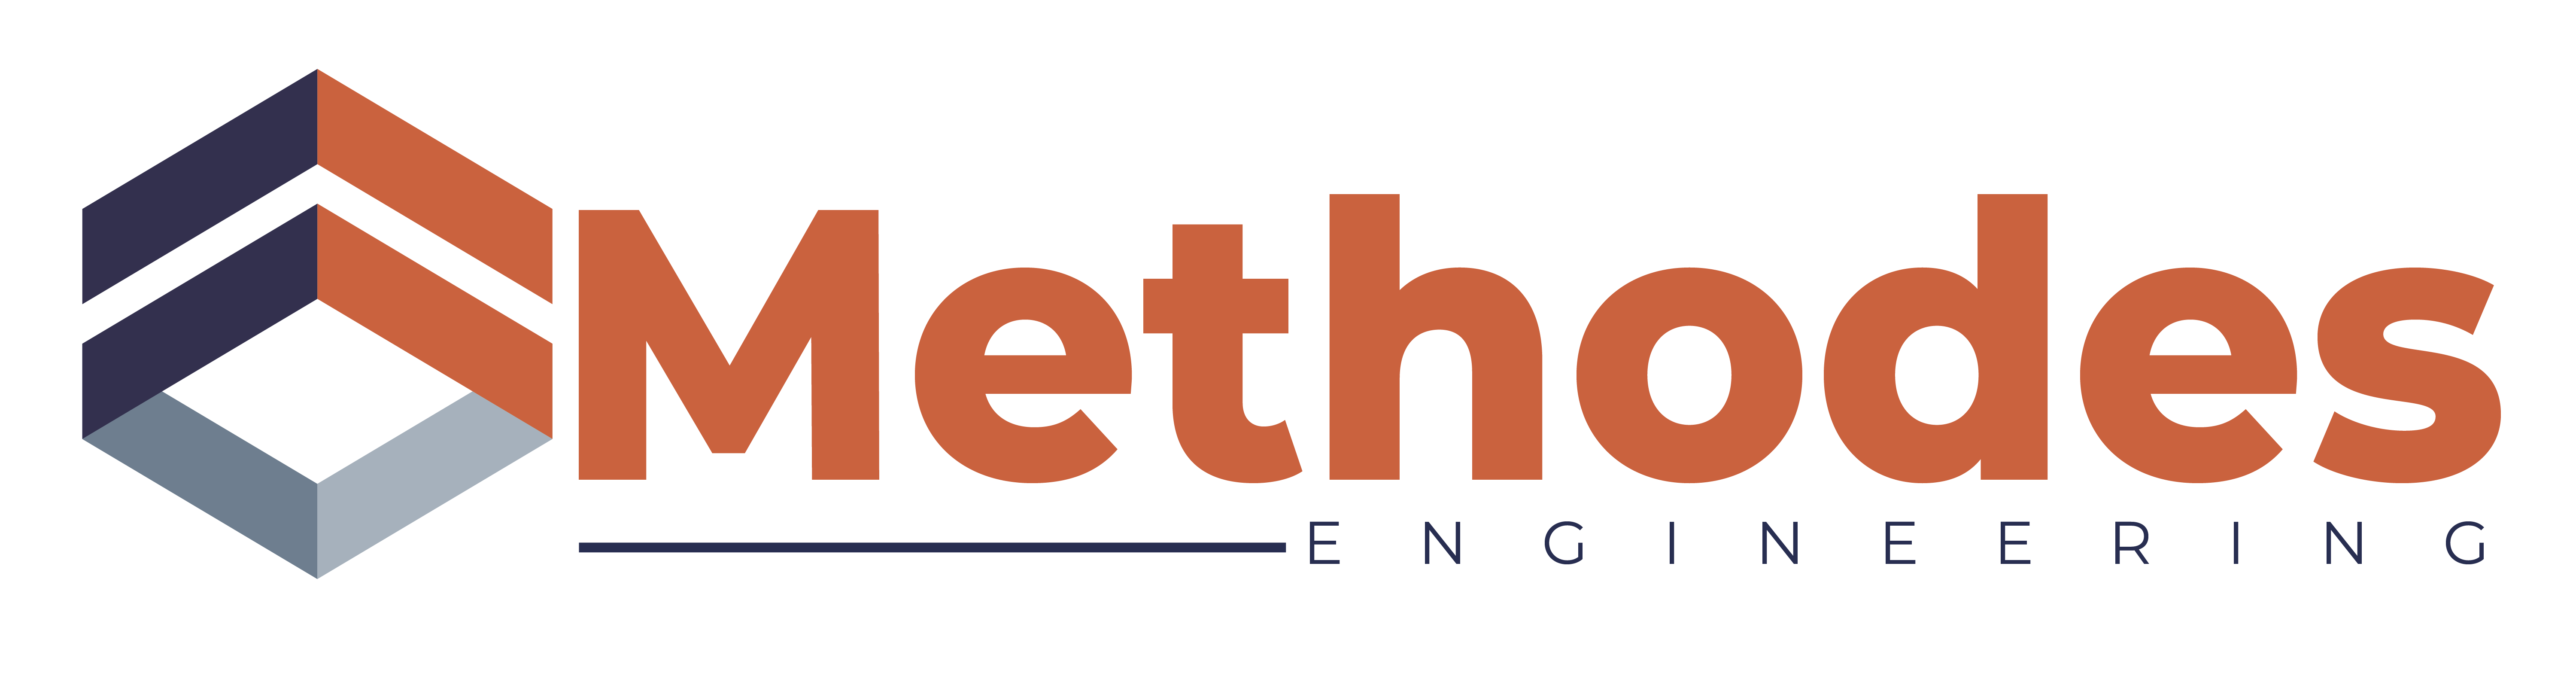 METHODES Engineering